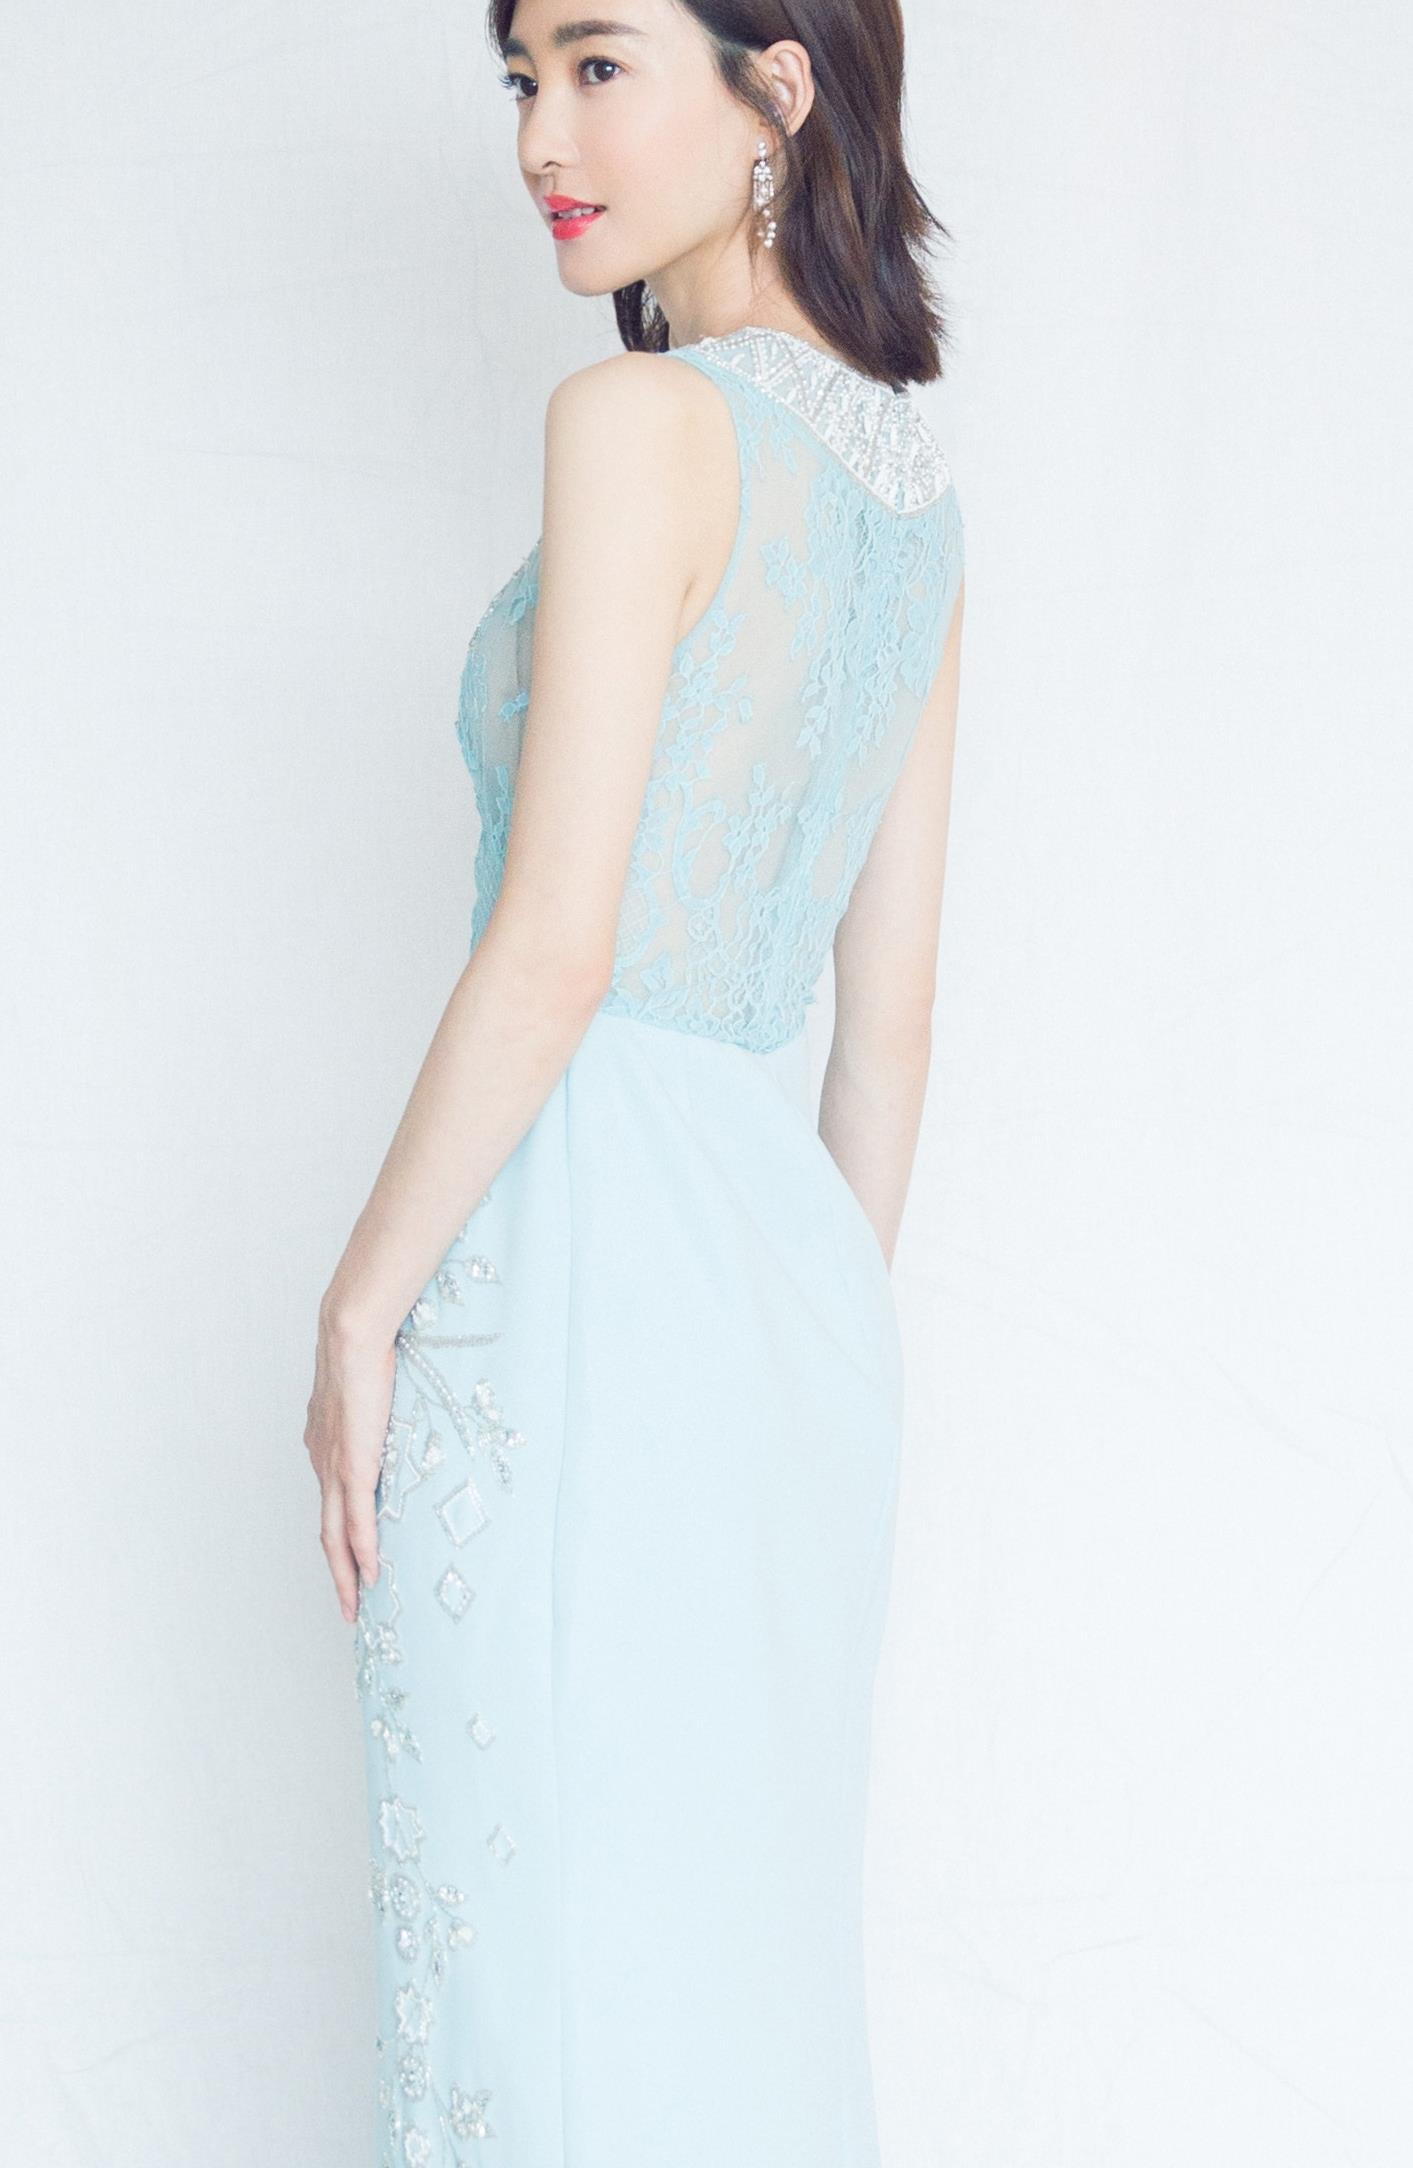 王丽坤的裙装穿搭示范,优雅好看,美出了自信感